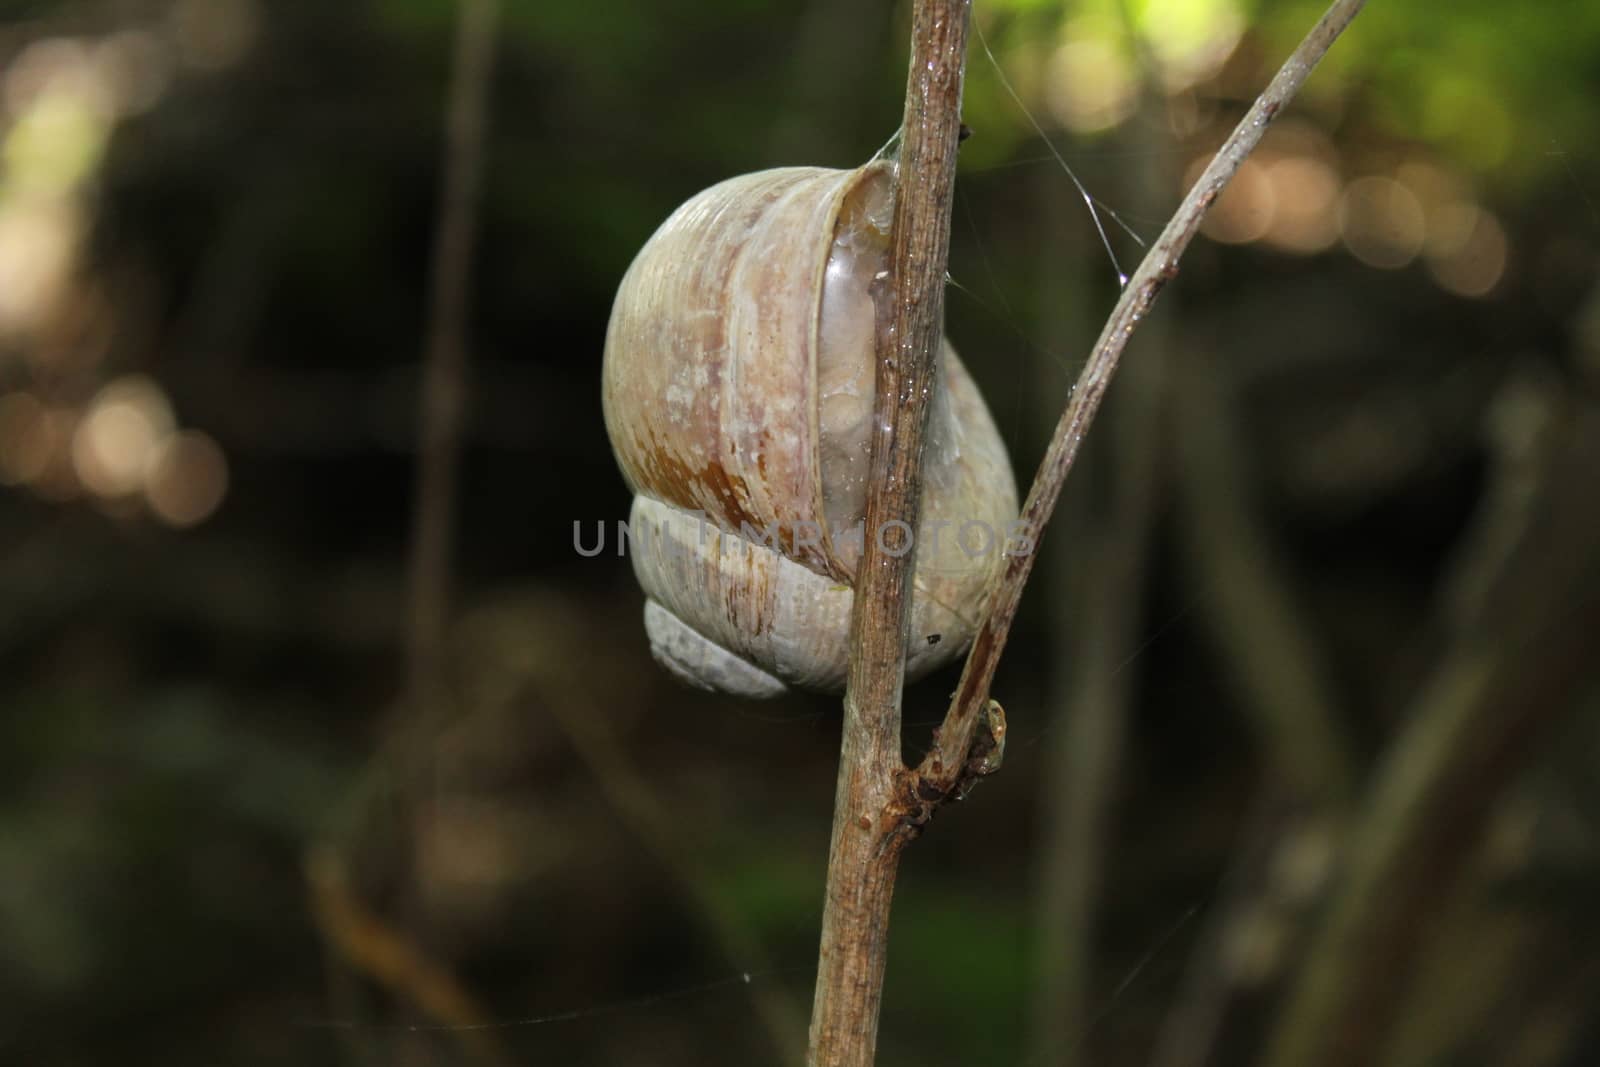 vineyard snail in the forest by martina_unbehauen